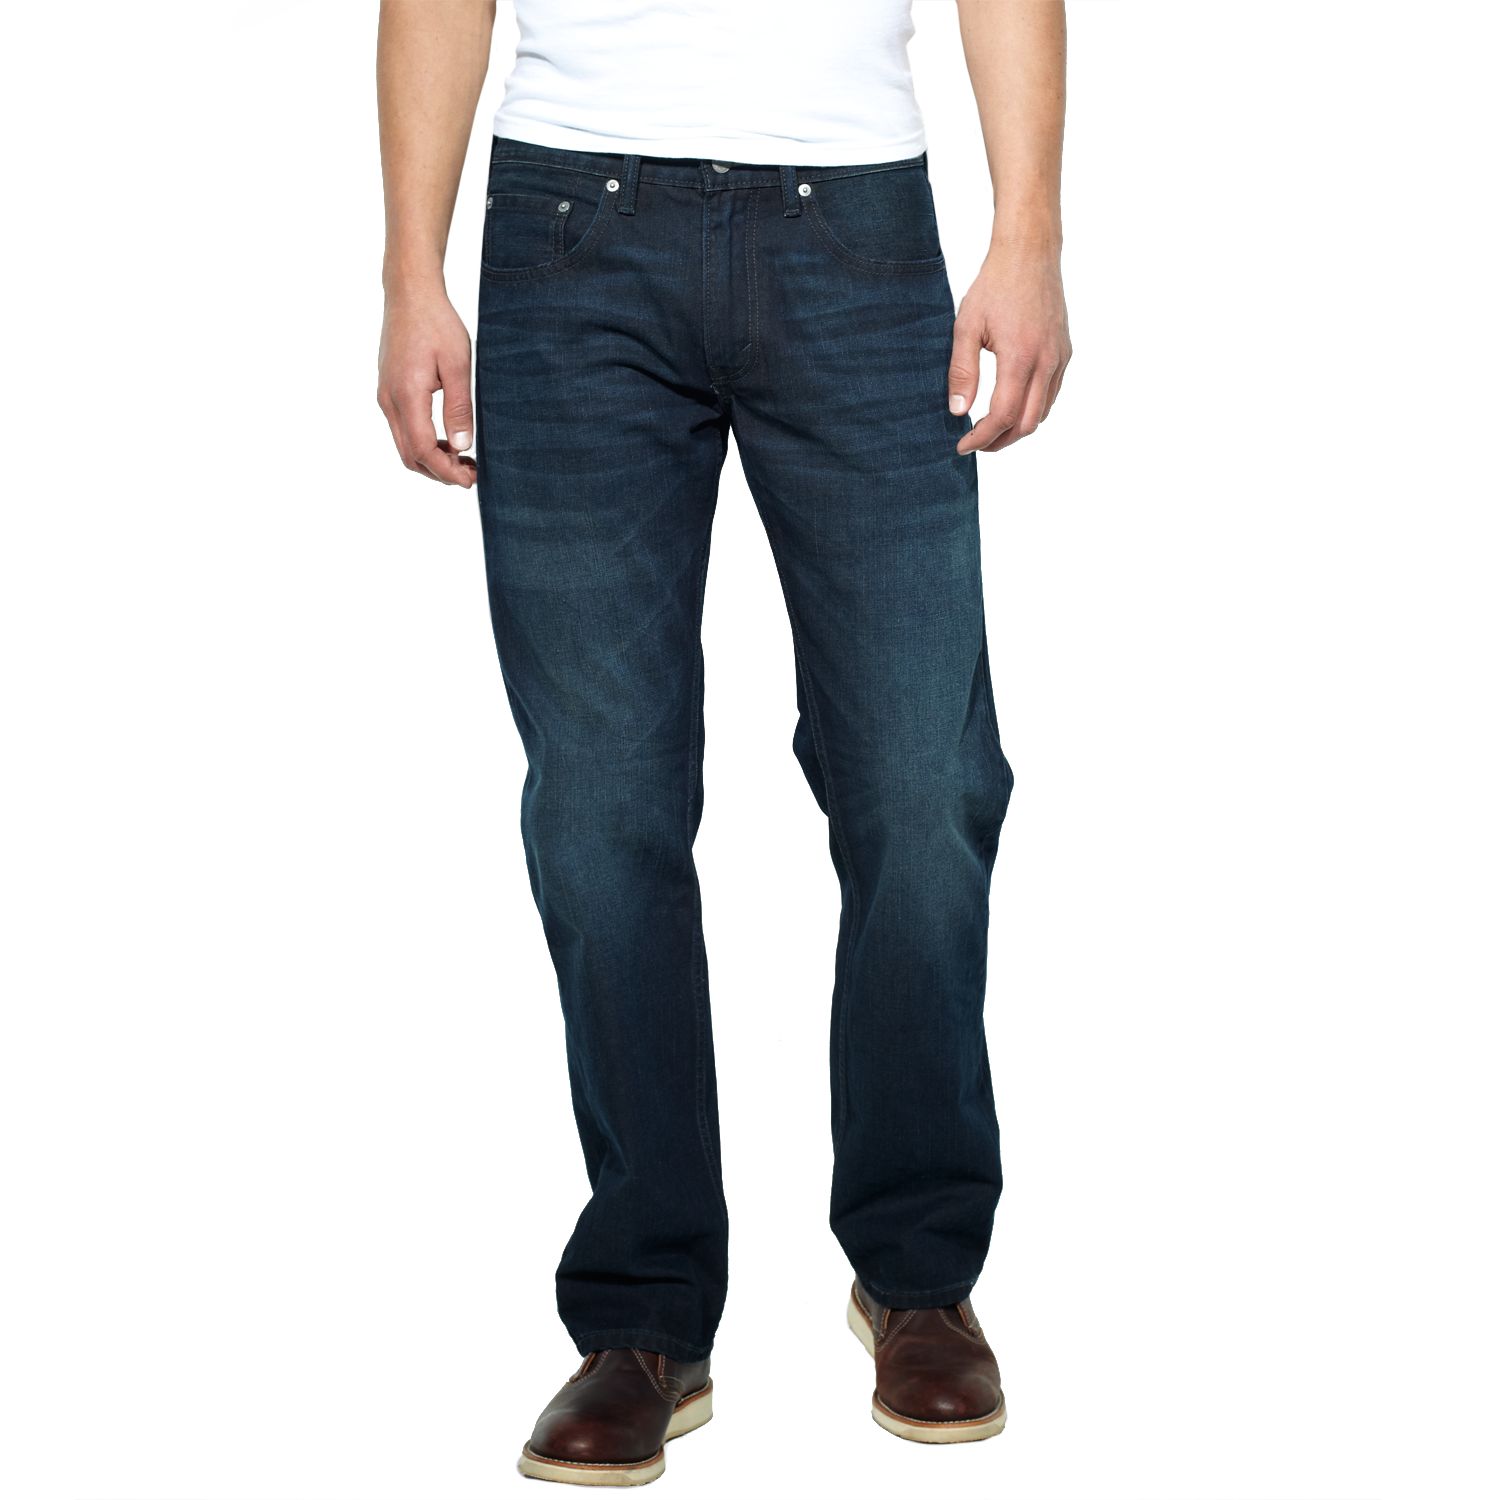 levis 559 jeans